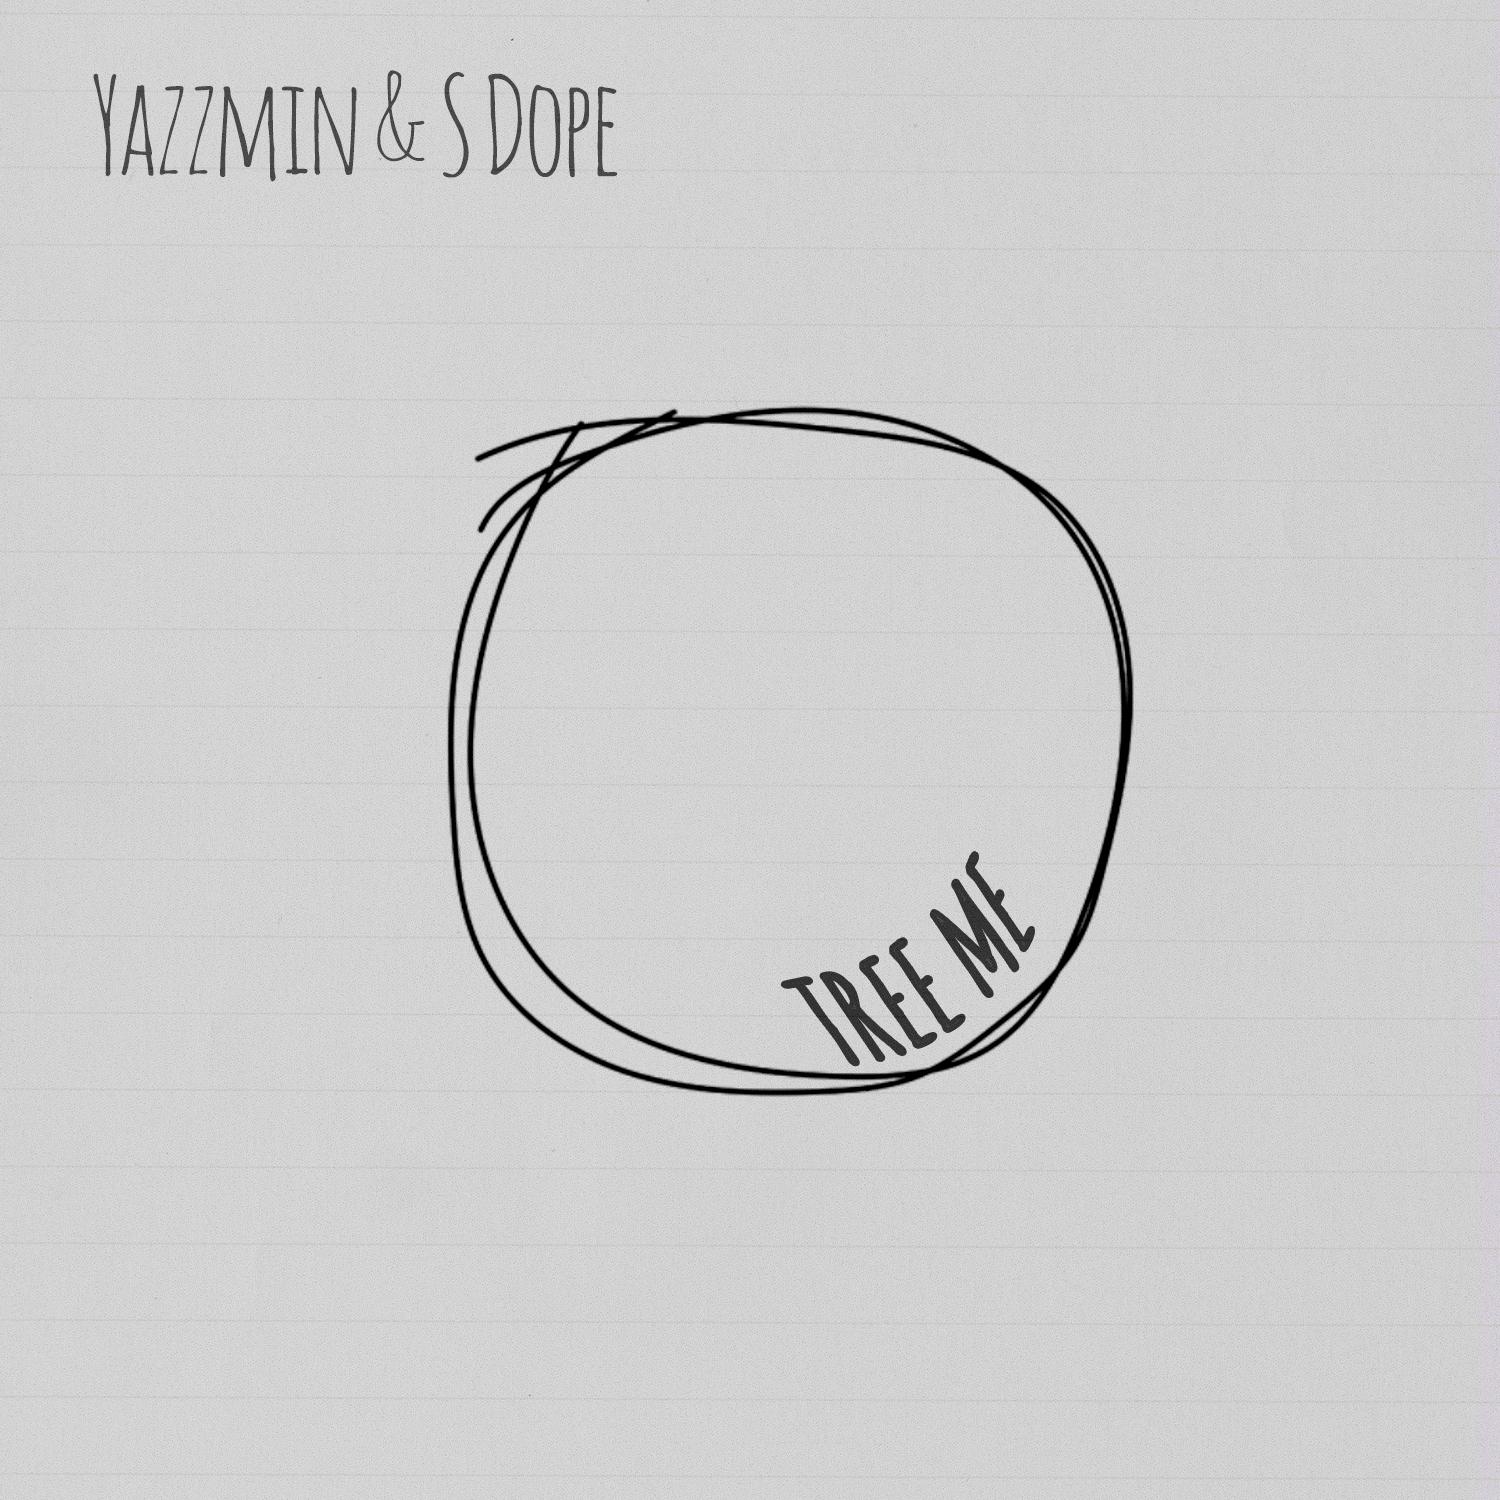 YAZZMIN - Tree Me